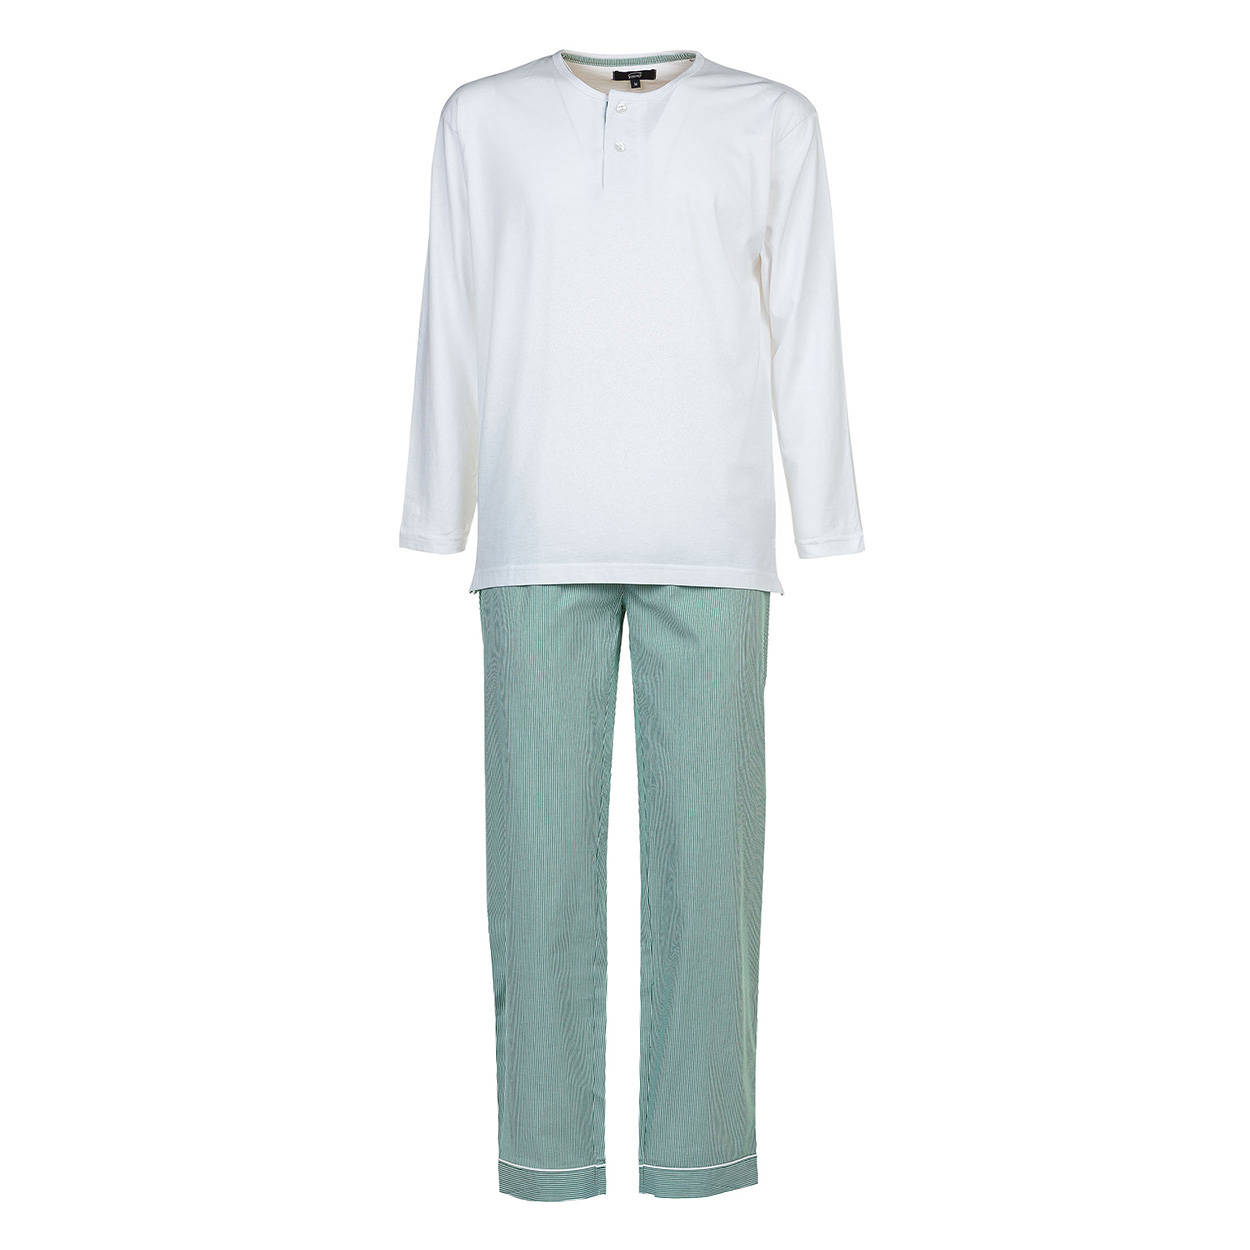 Pigiama con maglia in cotone bianca e pantalone righe verdi Ventis Uomo Abbigliamento Intimo Magliette intime 